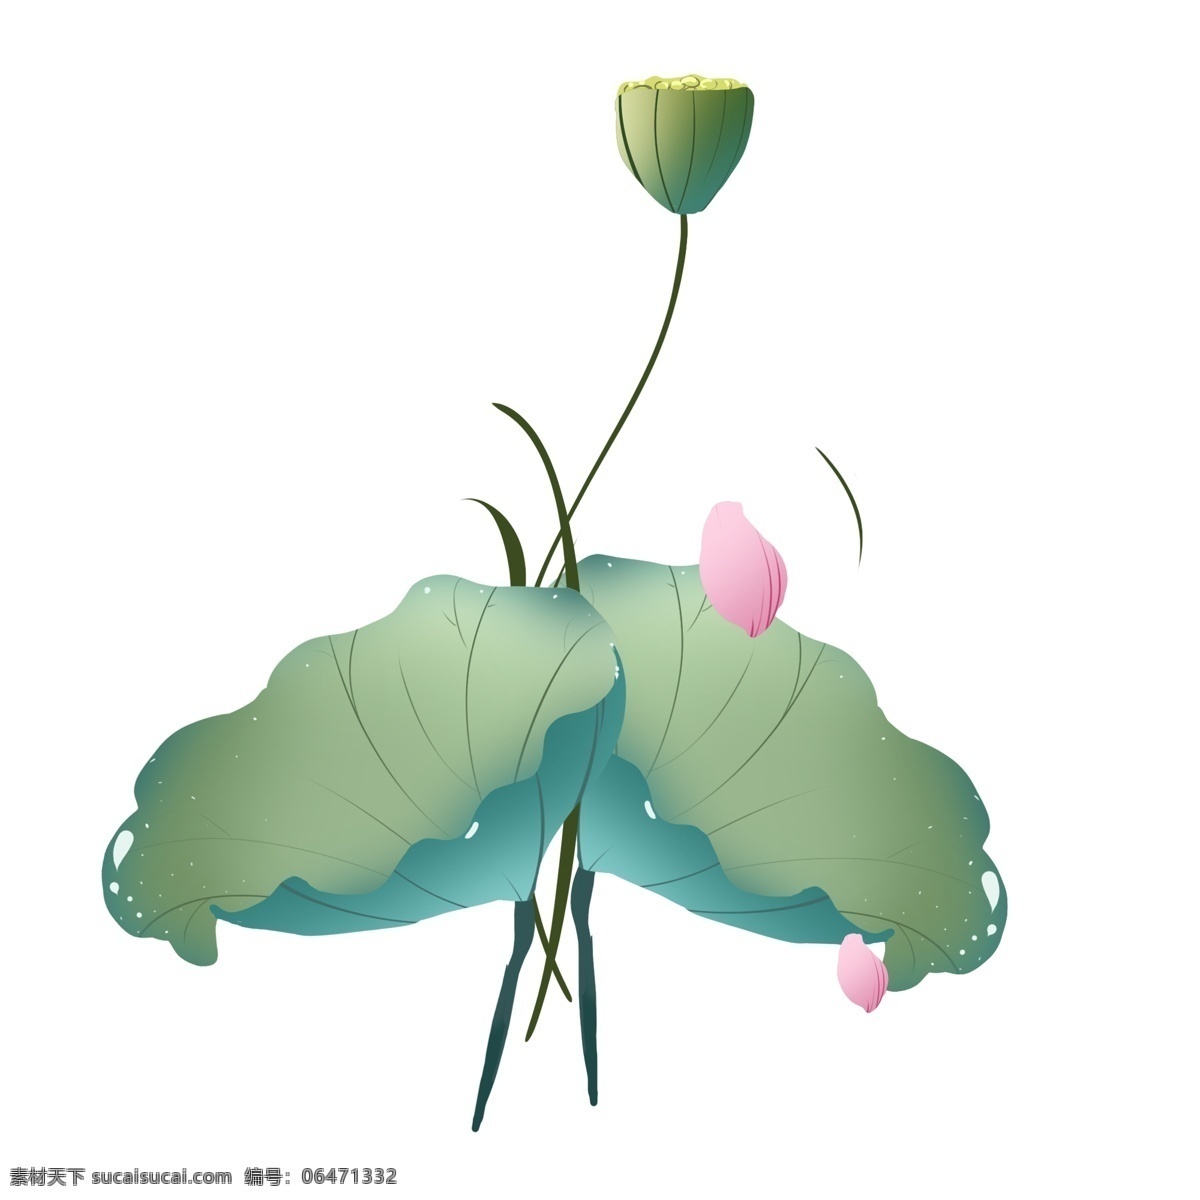 漂亮 绿色 荷花 插画 创意植物插画 荷叶 盛开的花朵 绿色的荷叶 卡通植物插画 唯美的花朵 植物